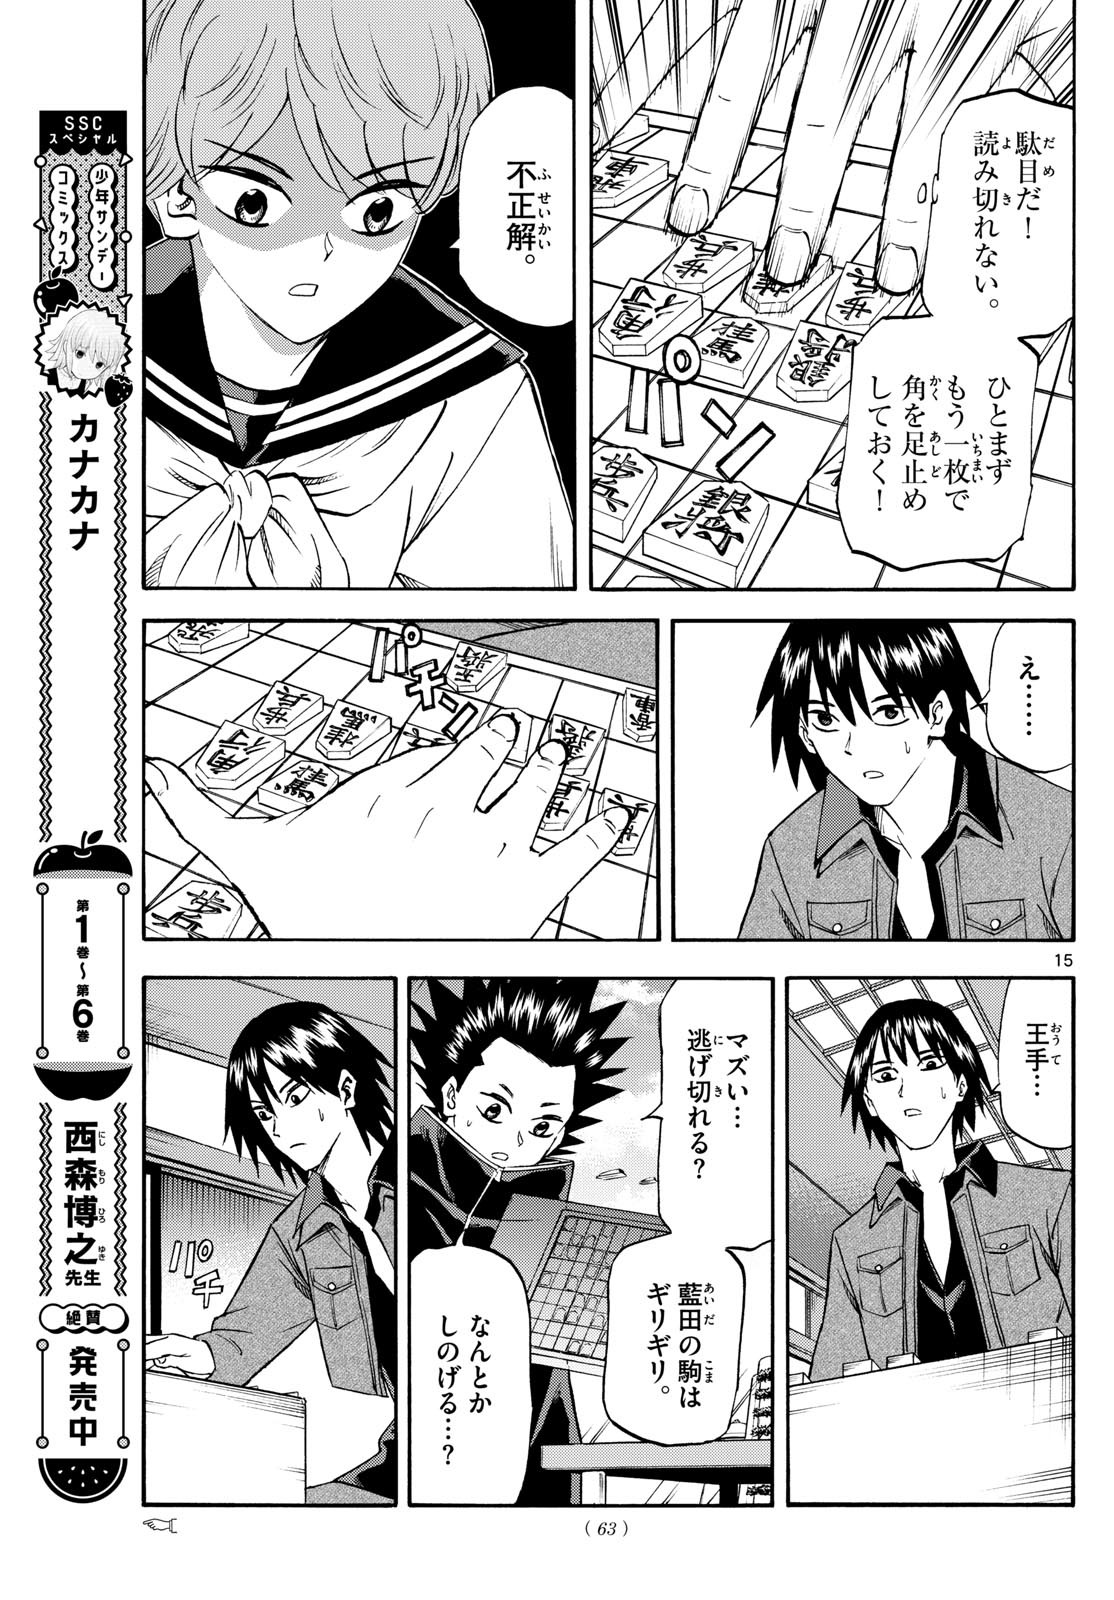 Ryu-to-Ichigo - Chapter 194 - Page 15